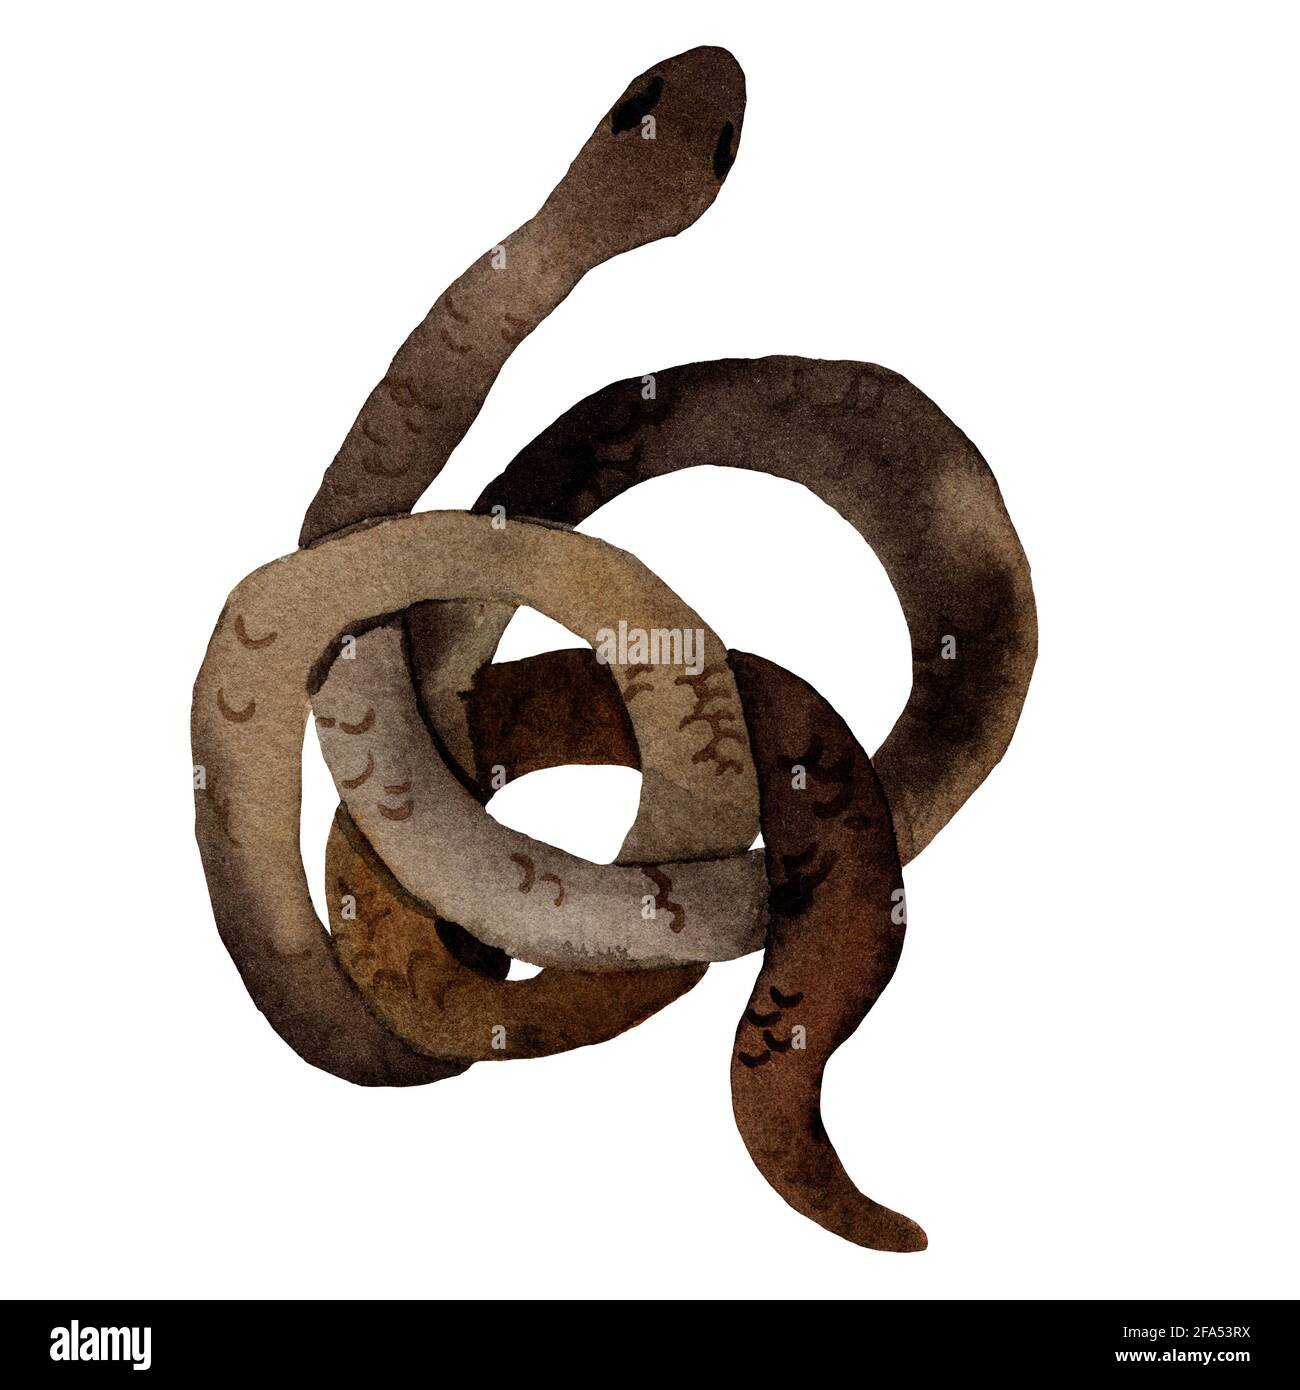 Aquarelle dessin à la main de serpents de couleur brune avec texture de peau. Le serpent est en forme d'anneau. Animal de style dessin animé. Banque D'Images